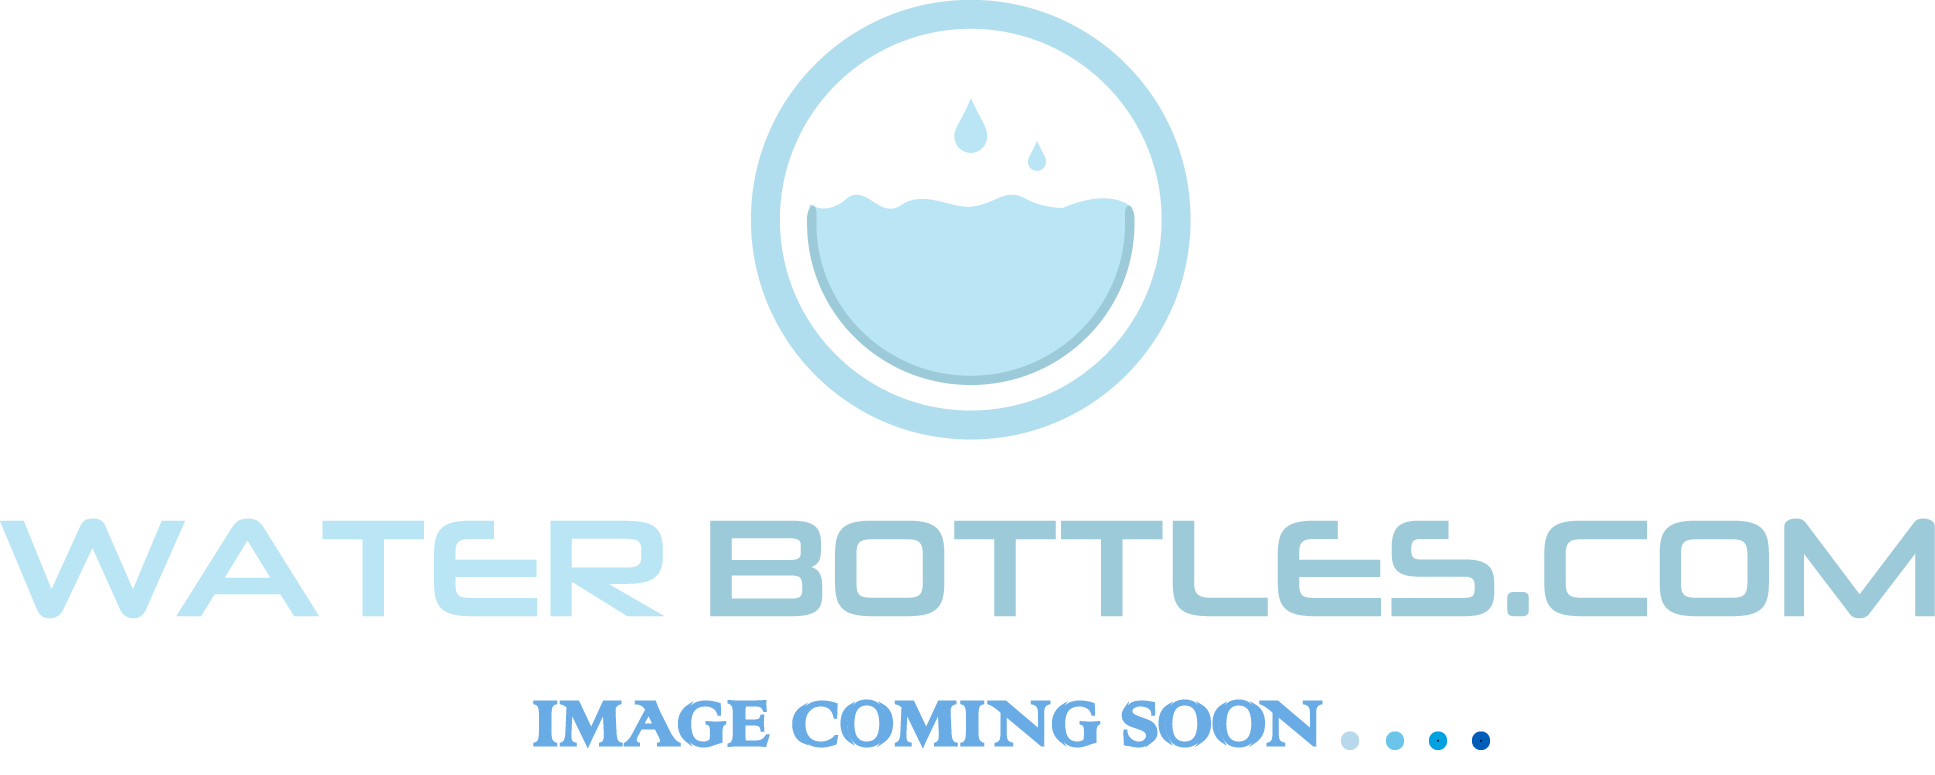 Water Bottle 71999011 for sale online Hobie 16oz 